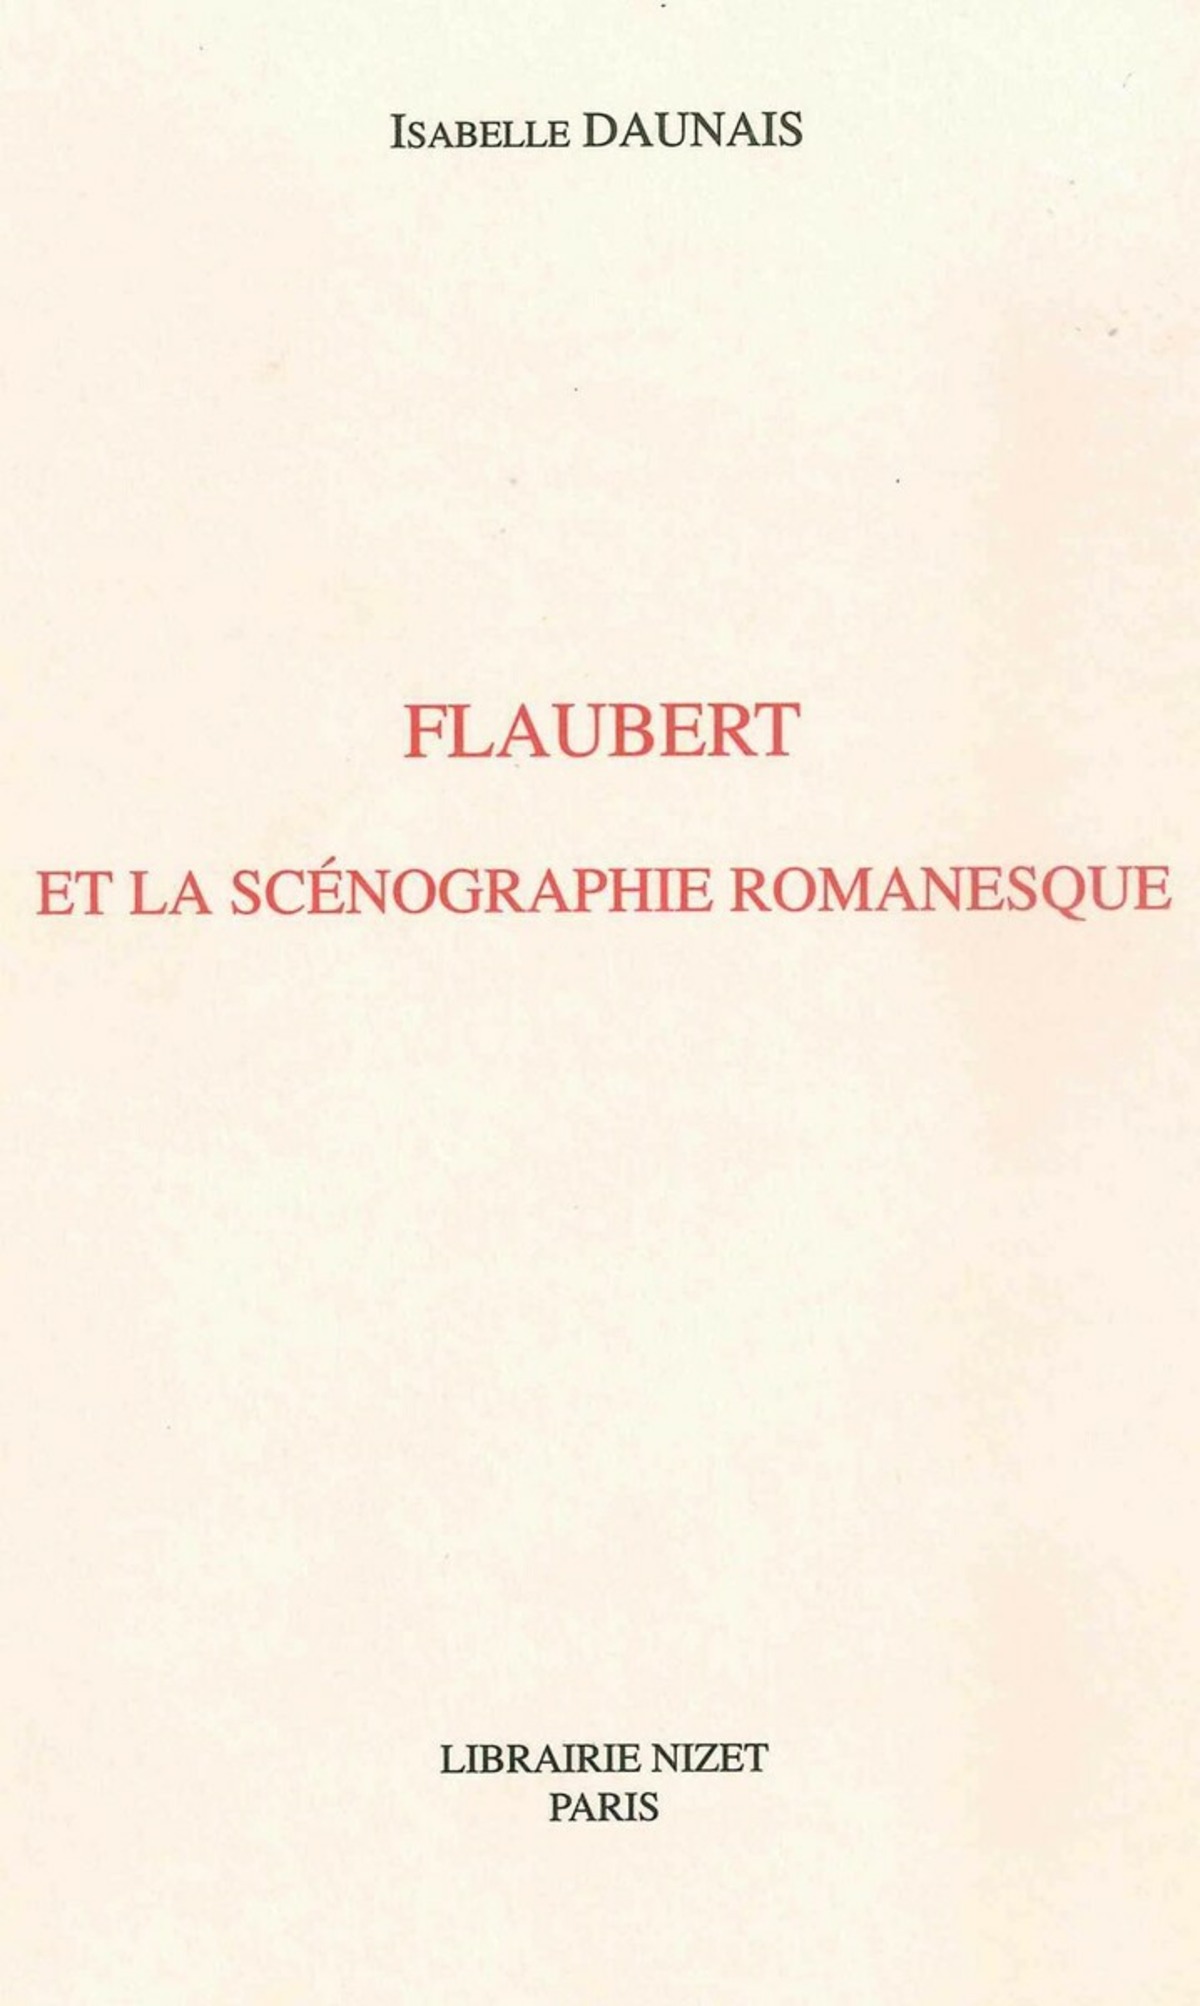 Flaubert et la scénographie romanesque